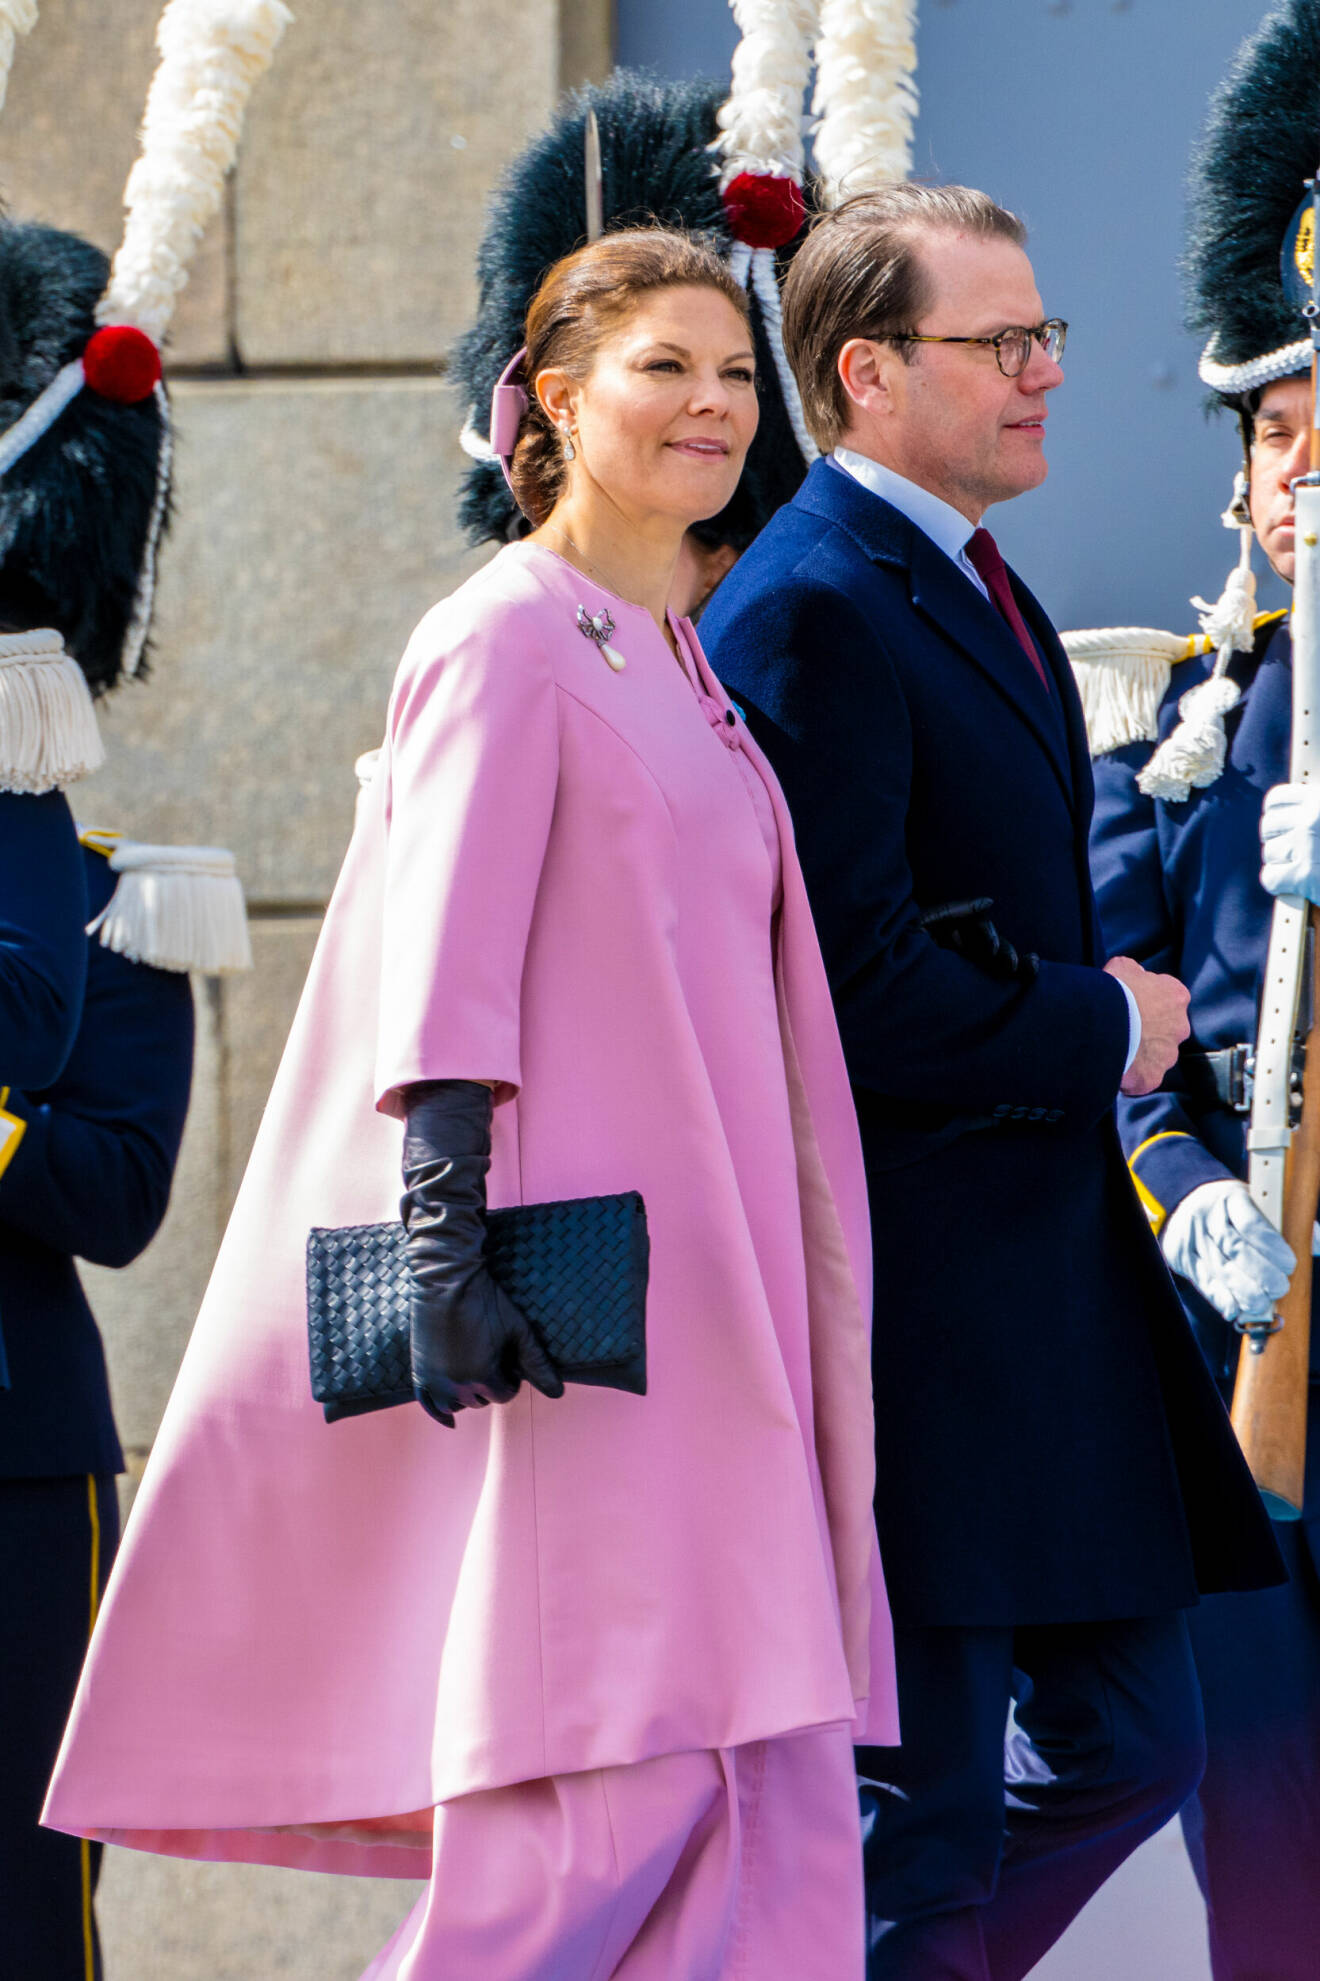 Kronprinsessan Victorias i klänning och kappa designad av Christer Lindarw och sydd av Atelier Birgitta Jonsson